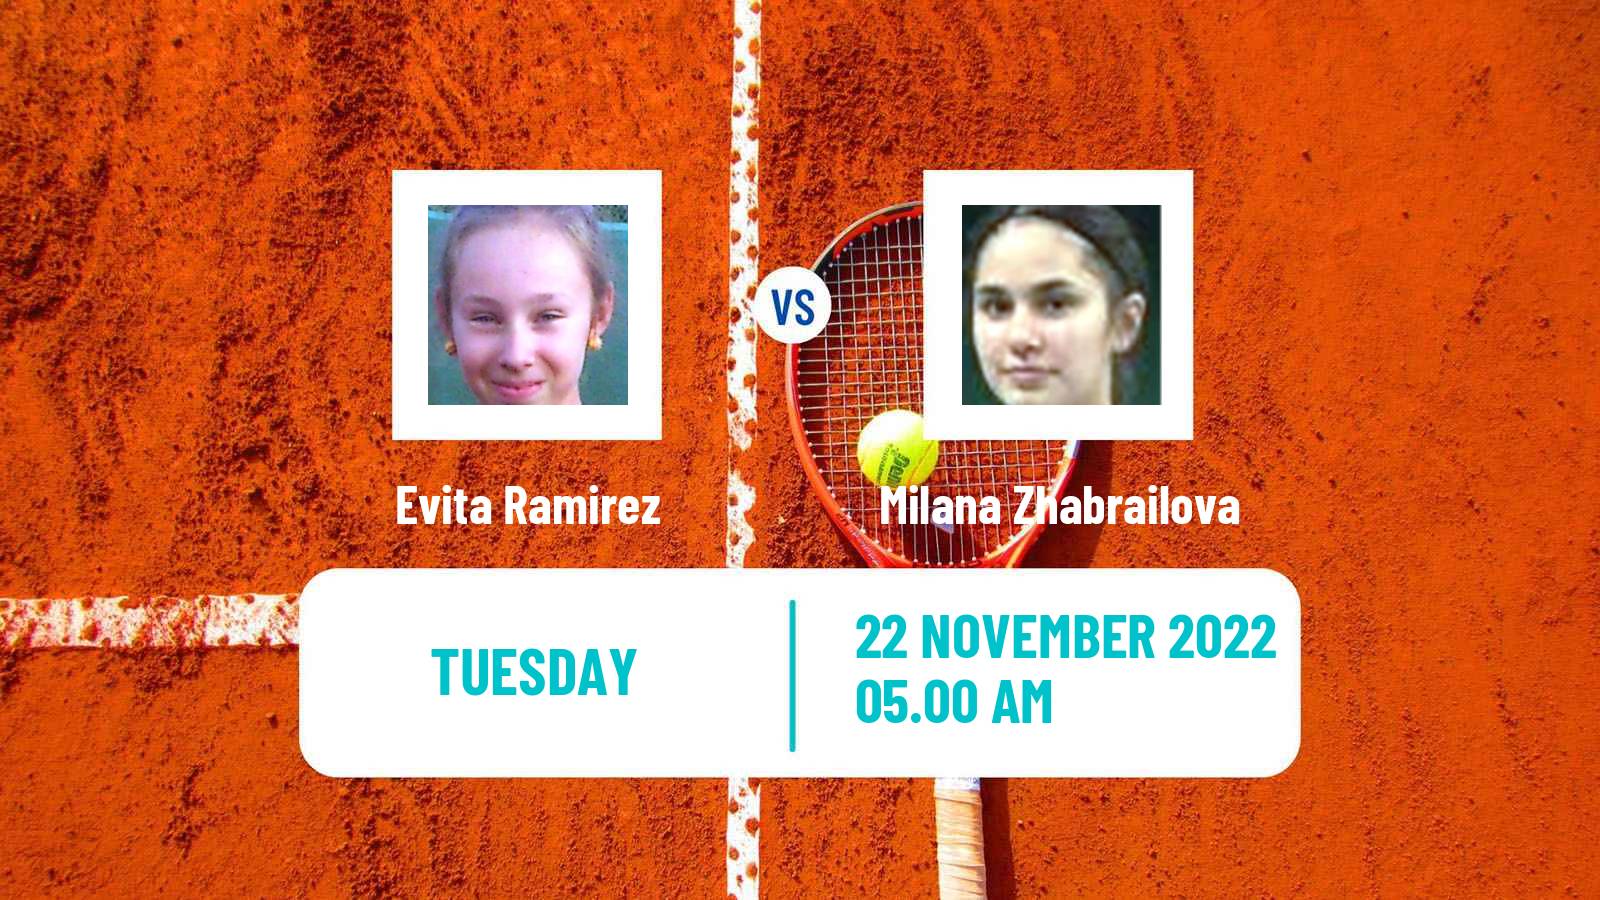 Tennis ITF Tournaments Evita Ramirez - Milana Zhabrailova